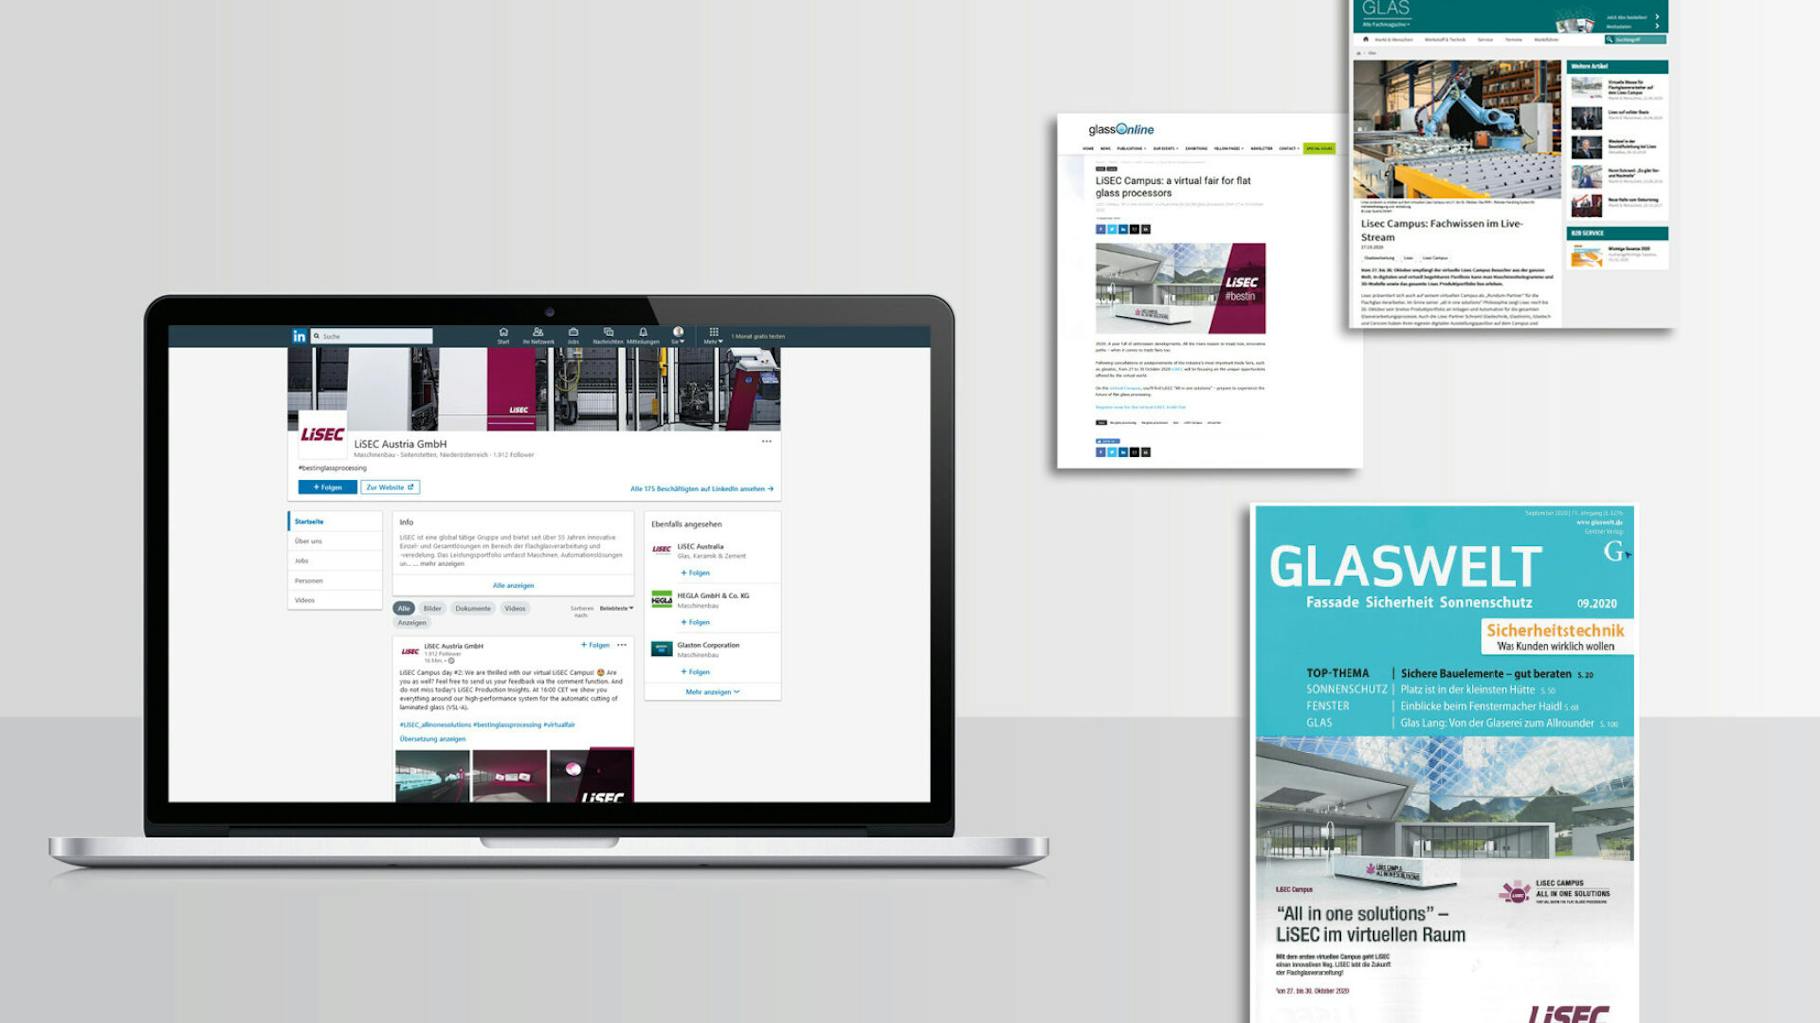 Auf einem Laptop ist ein LinkedIn-Profil der Firma Lisec zu sehen, rechts neben dem Laptop sind eine Zeitschrift und zwei Screenshots einer Website zu sehen.